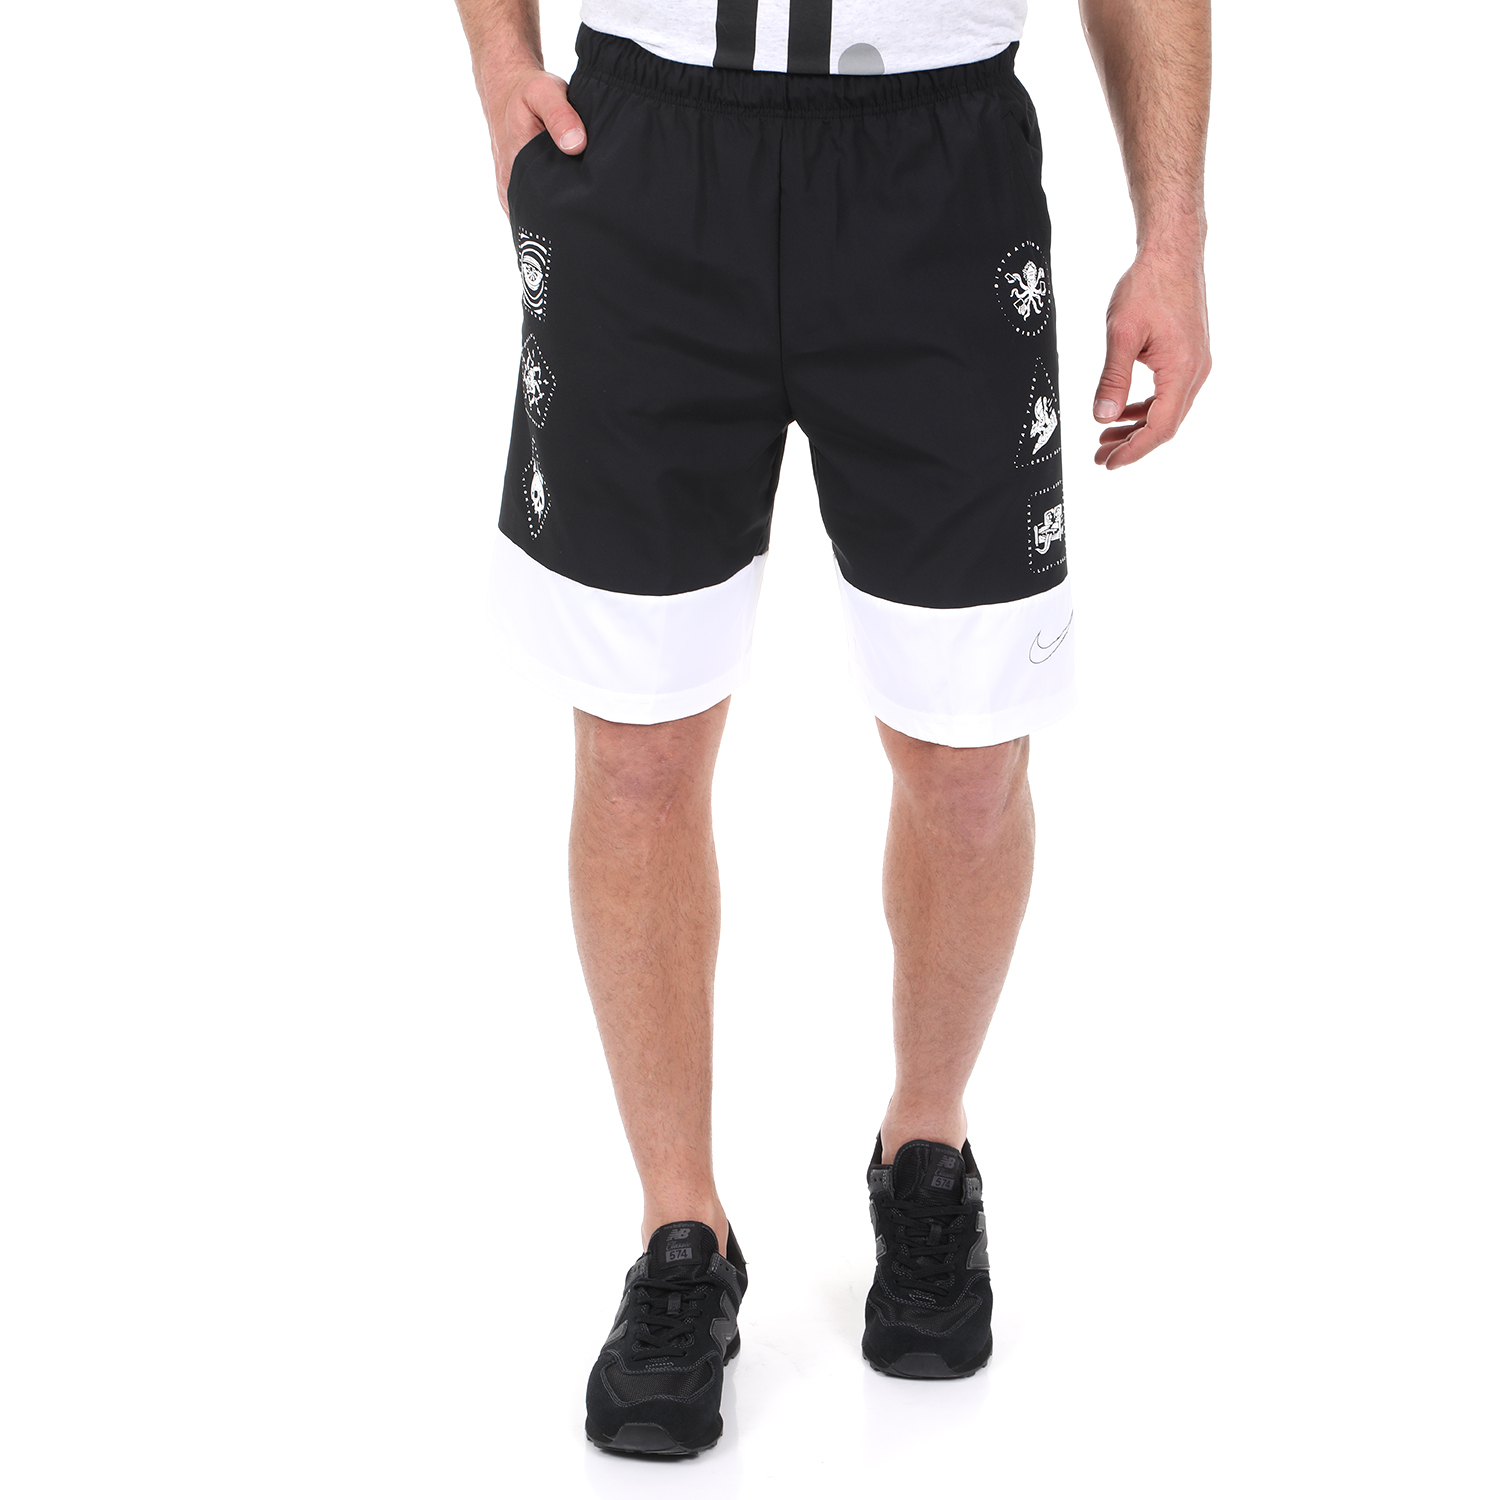 Ανδρικά/Ρούχα/Σορτς-Βερμούδες/Αθλητικά NIKE - Ανδρική αθλητική βερμούδα NIKE FLX SHORT 2.0 VLNS μαύρη λευκή